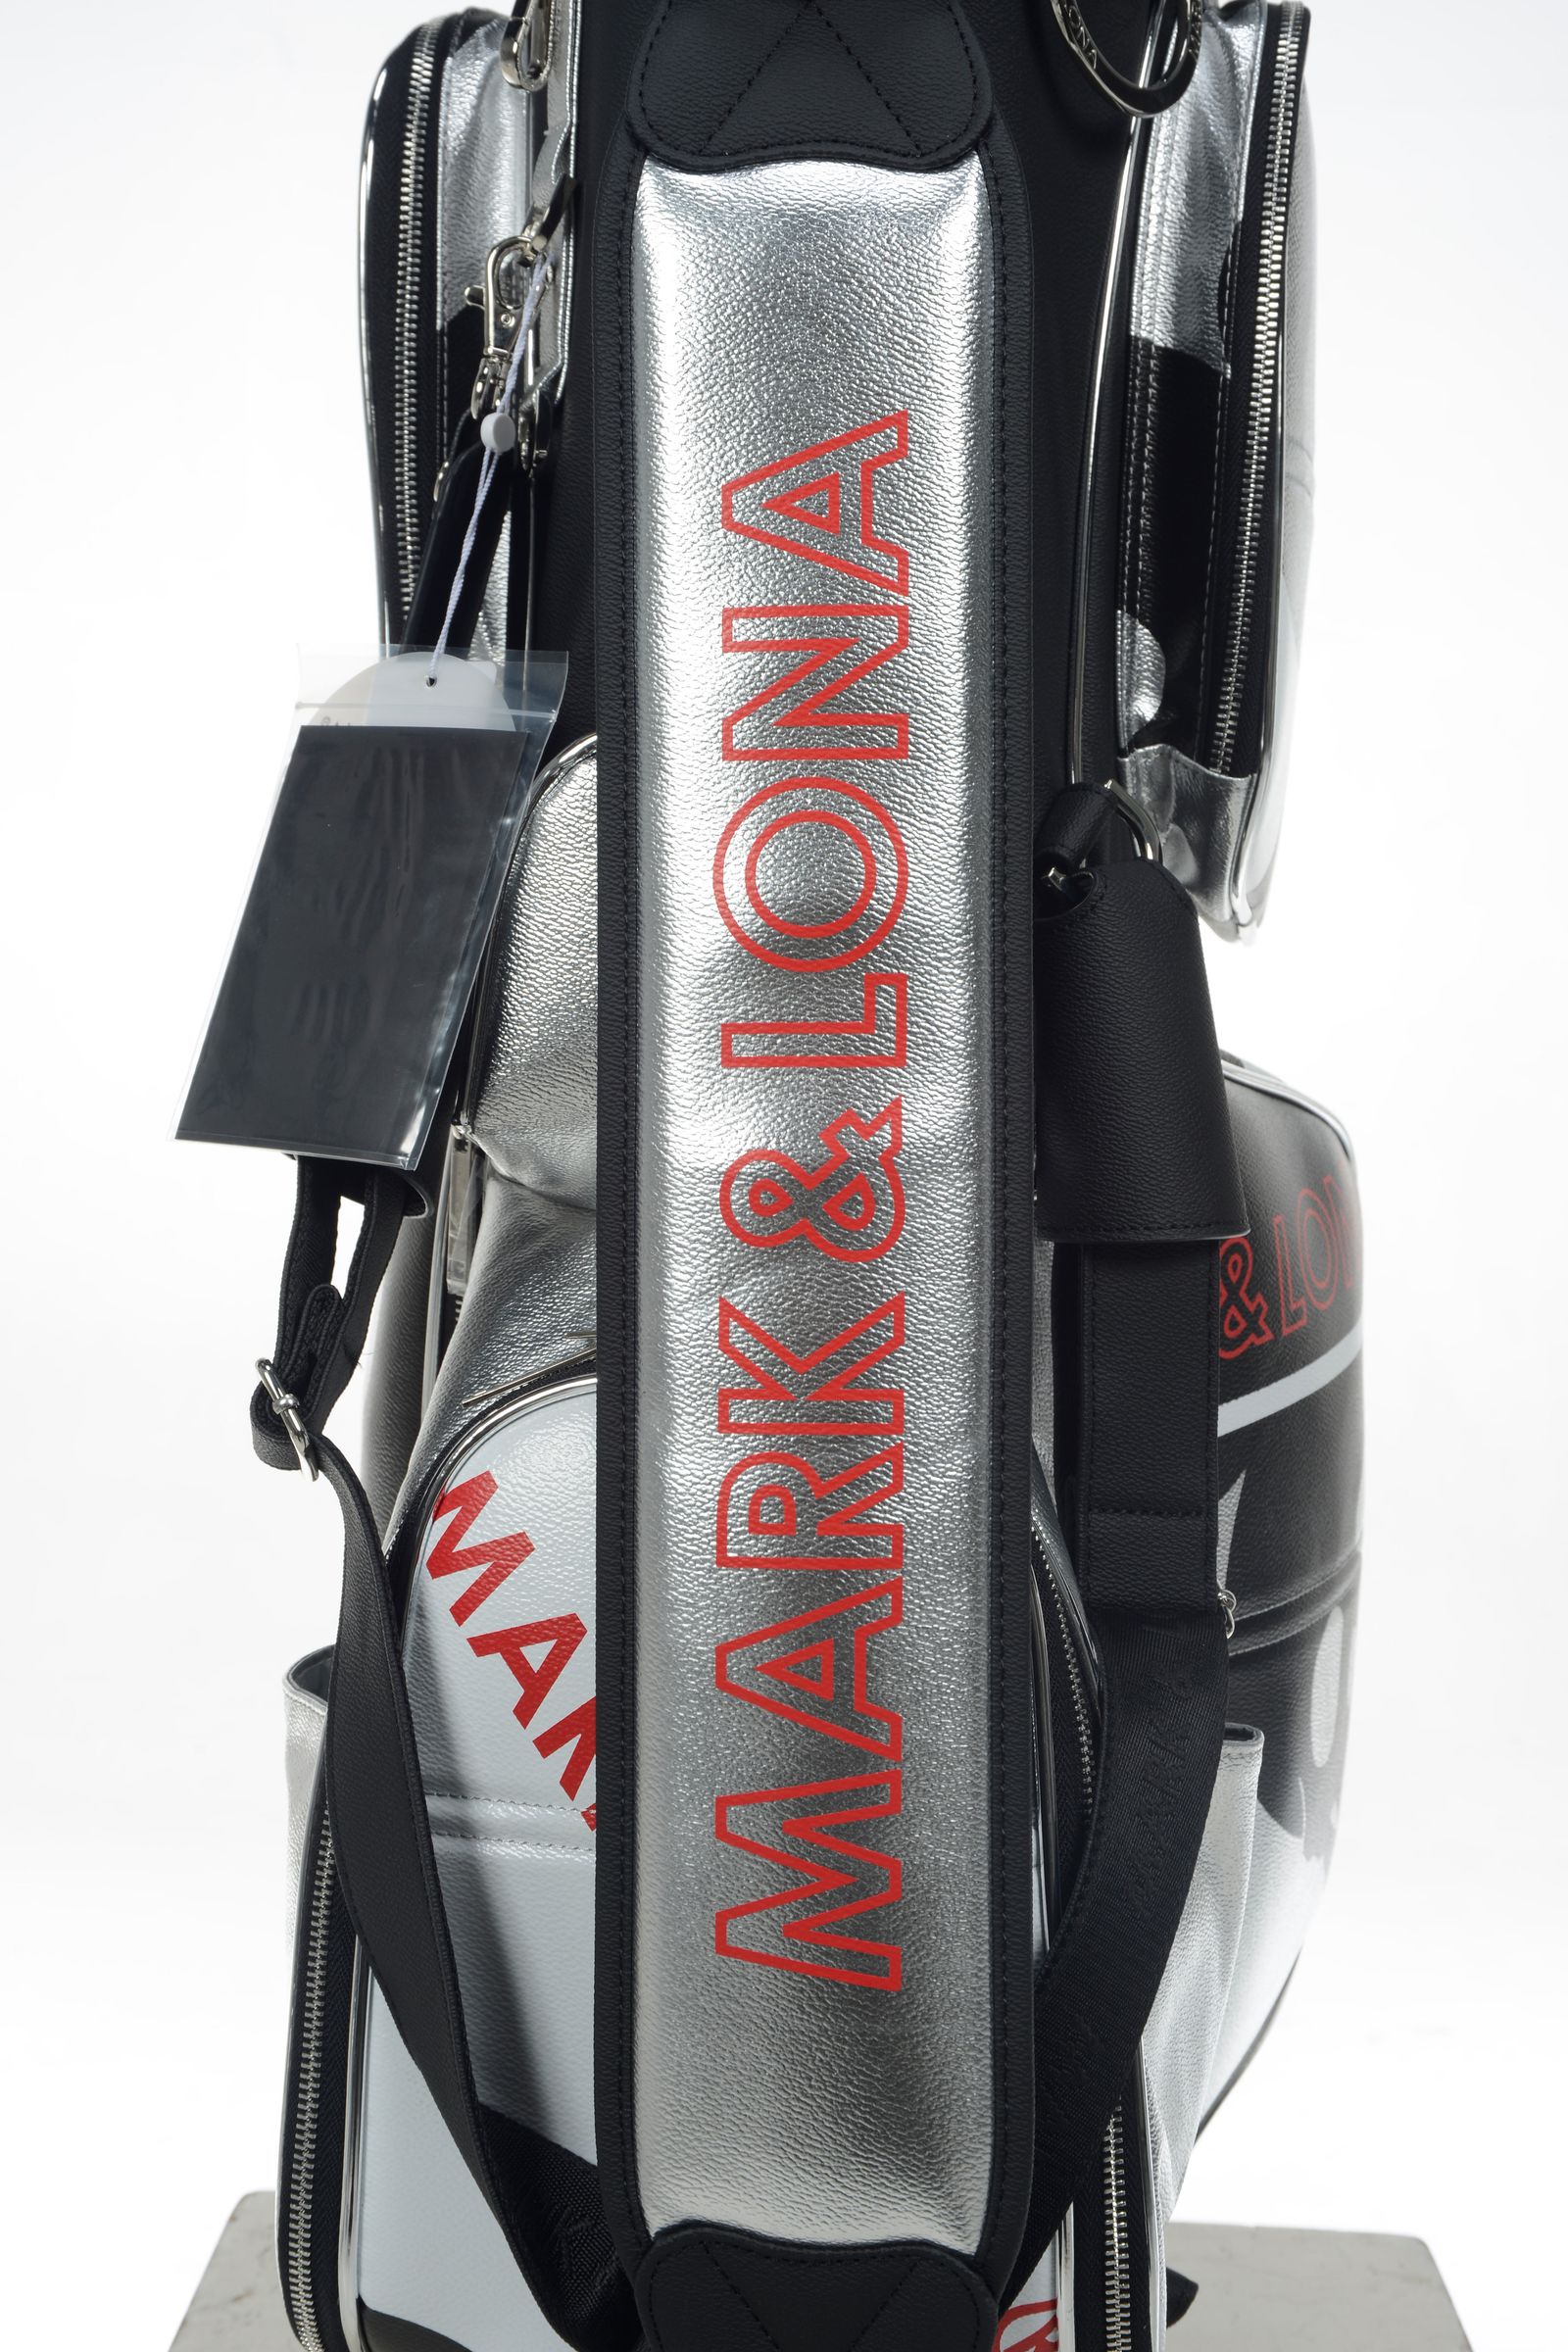 Cray Metallic Stand Bag | キャディバッグ | ブラック | ゴルフ